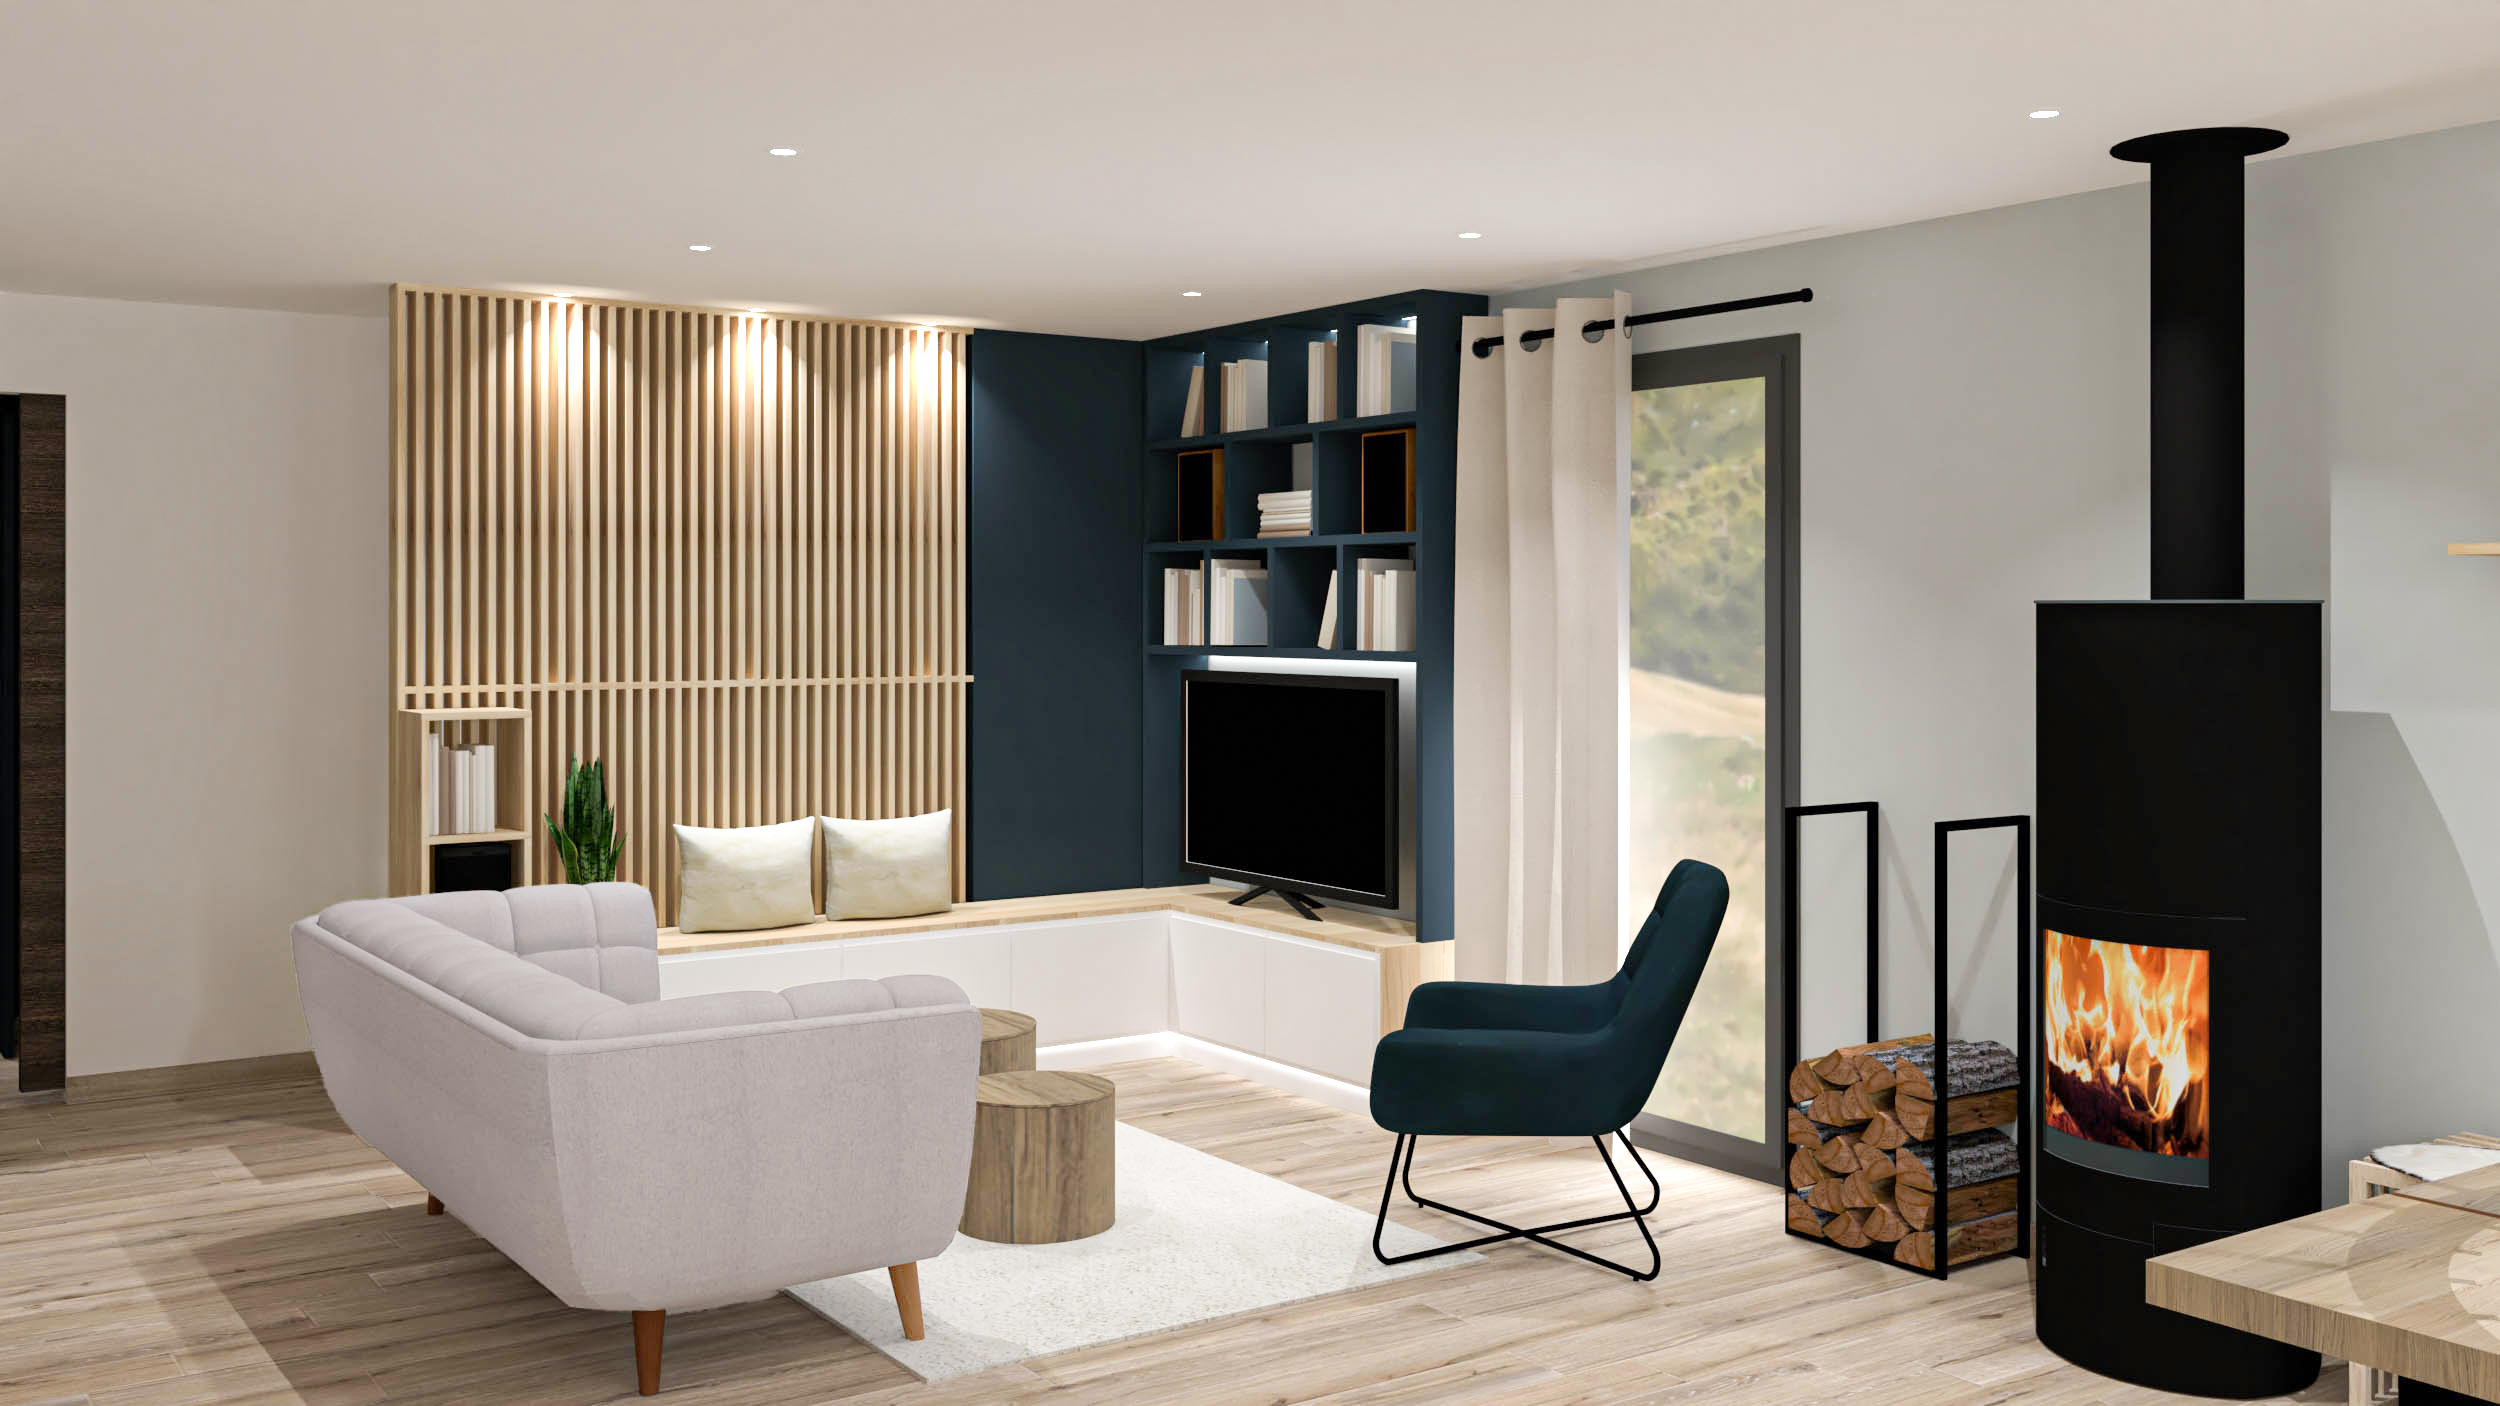 Projet Woody - Agencement et Décoration d'intérieur pour cette maison de 90m² à Seynod en Haute-Savoie